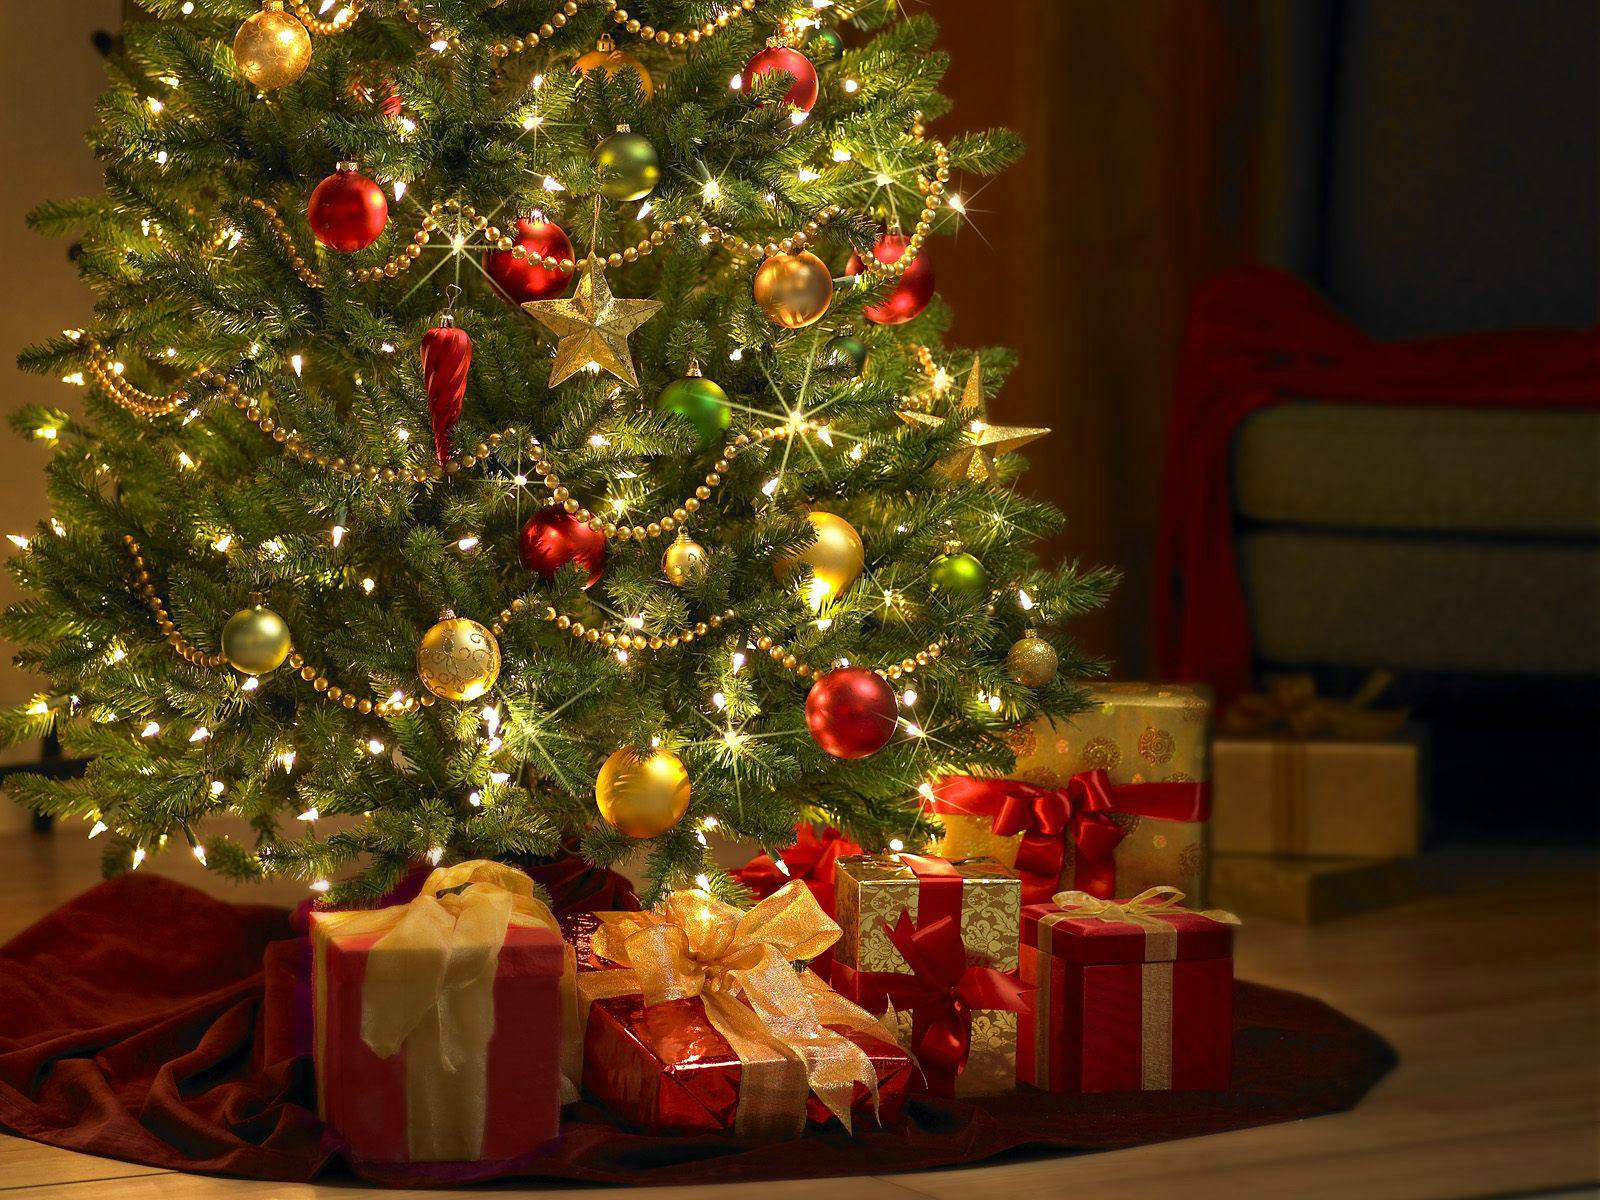 Tradições de Natal - A Árvore de Natal